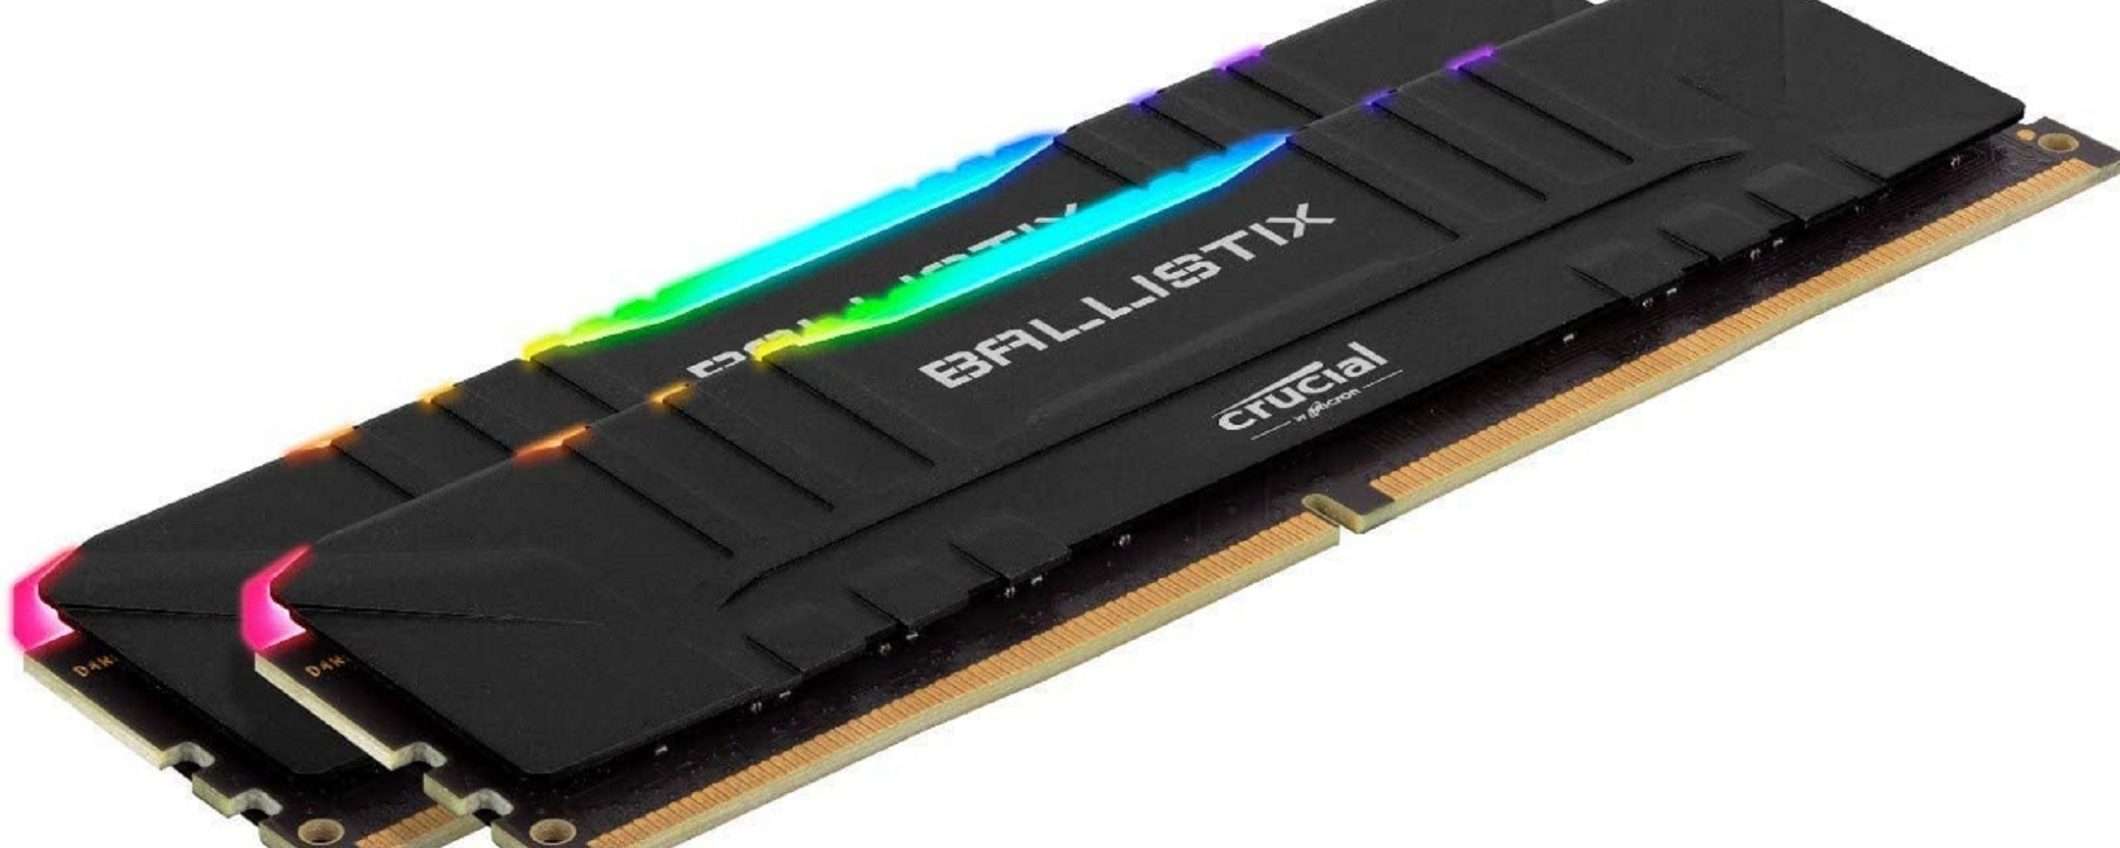 Crucial Ballistix RGB da 32GB a prezzo ASSURDO!